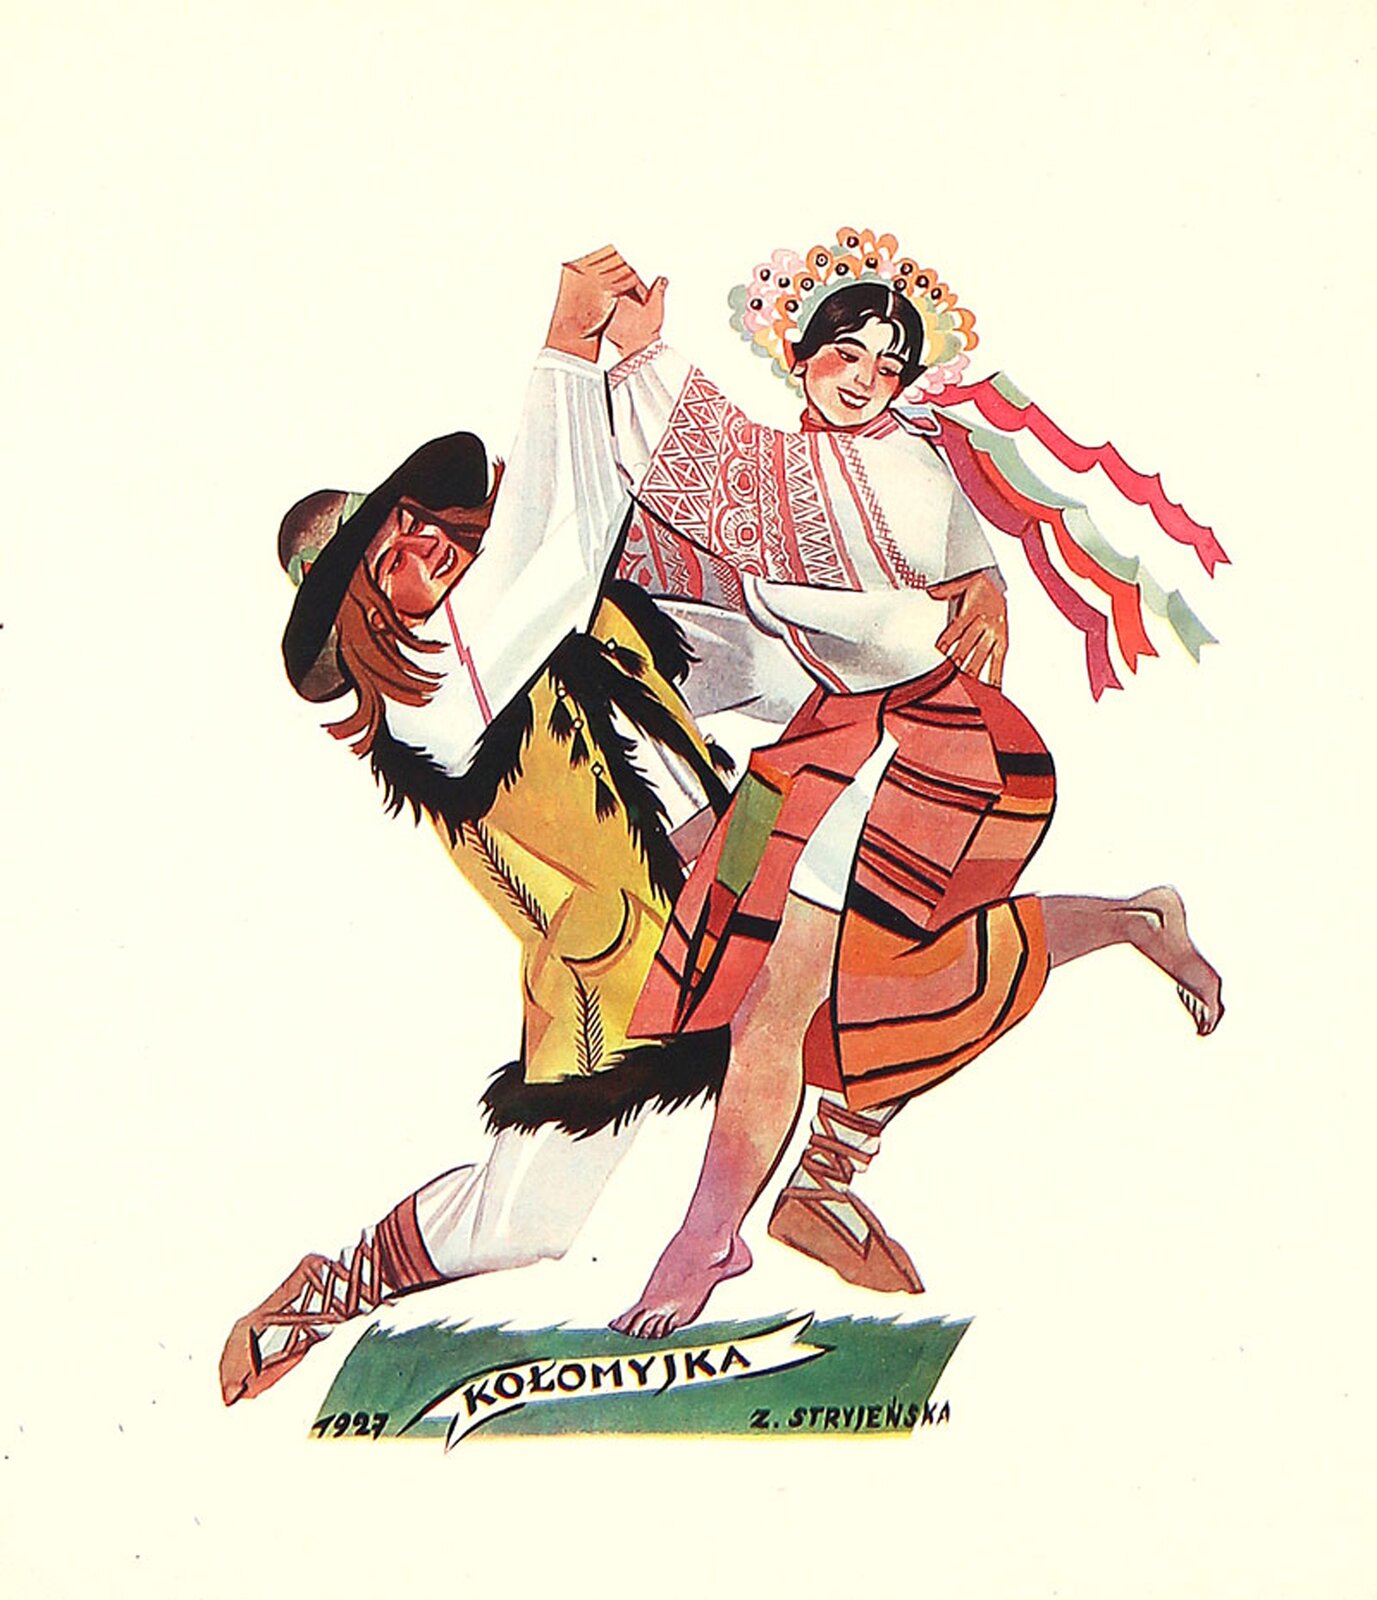 Na ilustracji grafika Zofii Stryjeńskiej "Kołomyjka". Przedstawia kobietę i mężczyznę. Postaci ubrane są w kolorowe stroje ludowe. Mężczyzna ubrany jest w białą koszulę, jasne spodnie i kożuszek bez rękawów, na głowie ma czarny kapelusz. Kobieta ma kolorową żółto-pomarańczowo-czerwoną spódnicę i białą koszulę z czerwonymi haftami na rękawach.